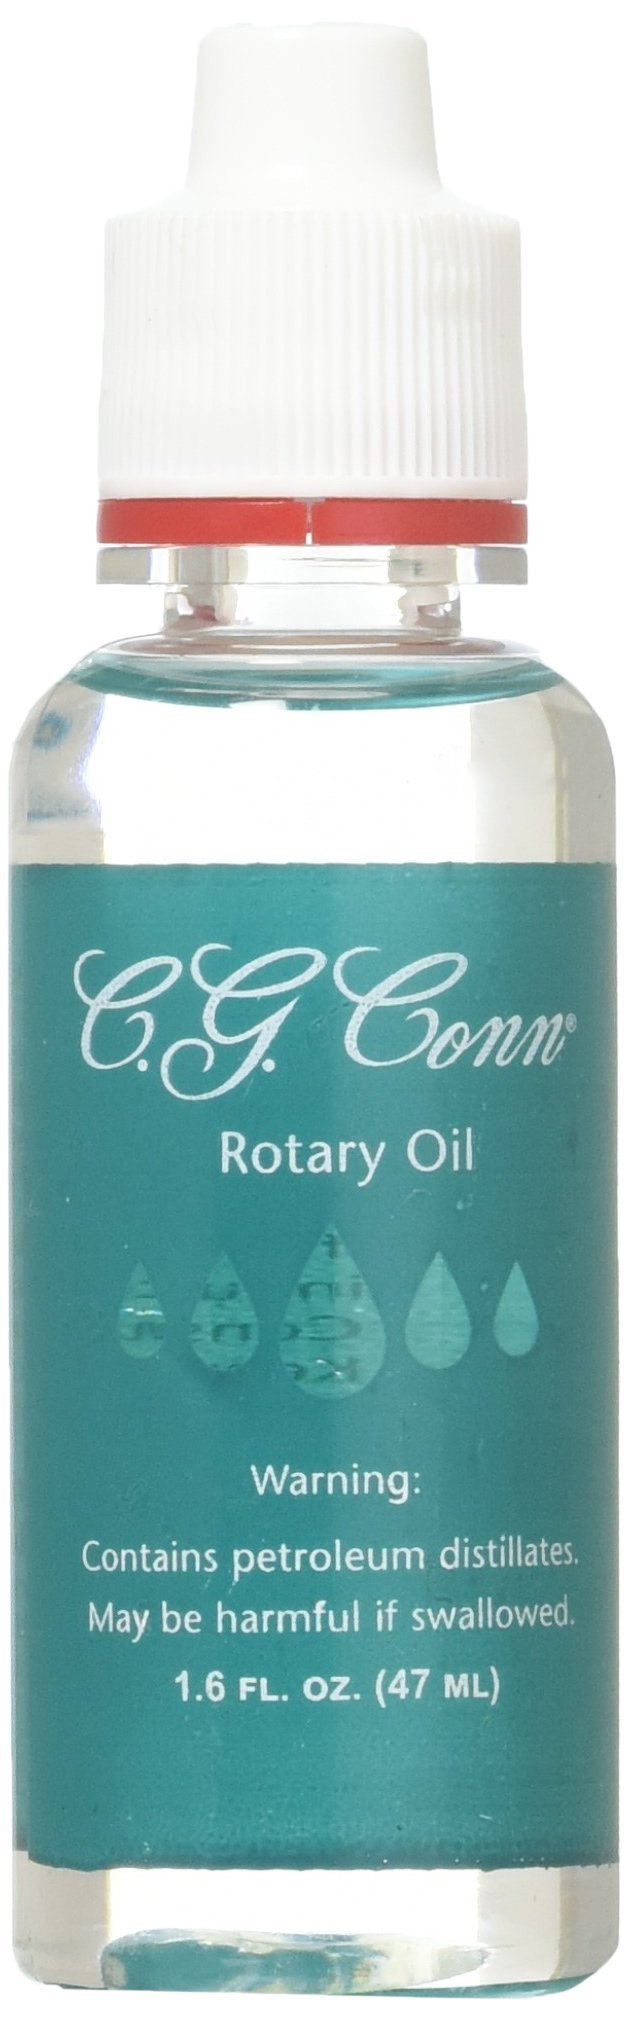 C. G. Conn Selmer Rotary Oil, 1.6 fl oz.